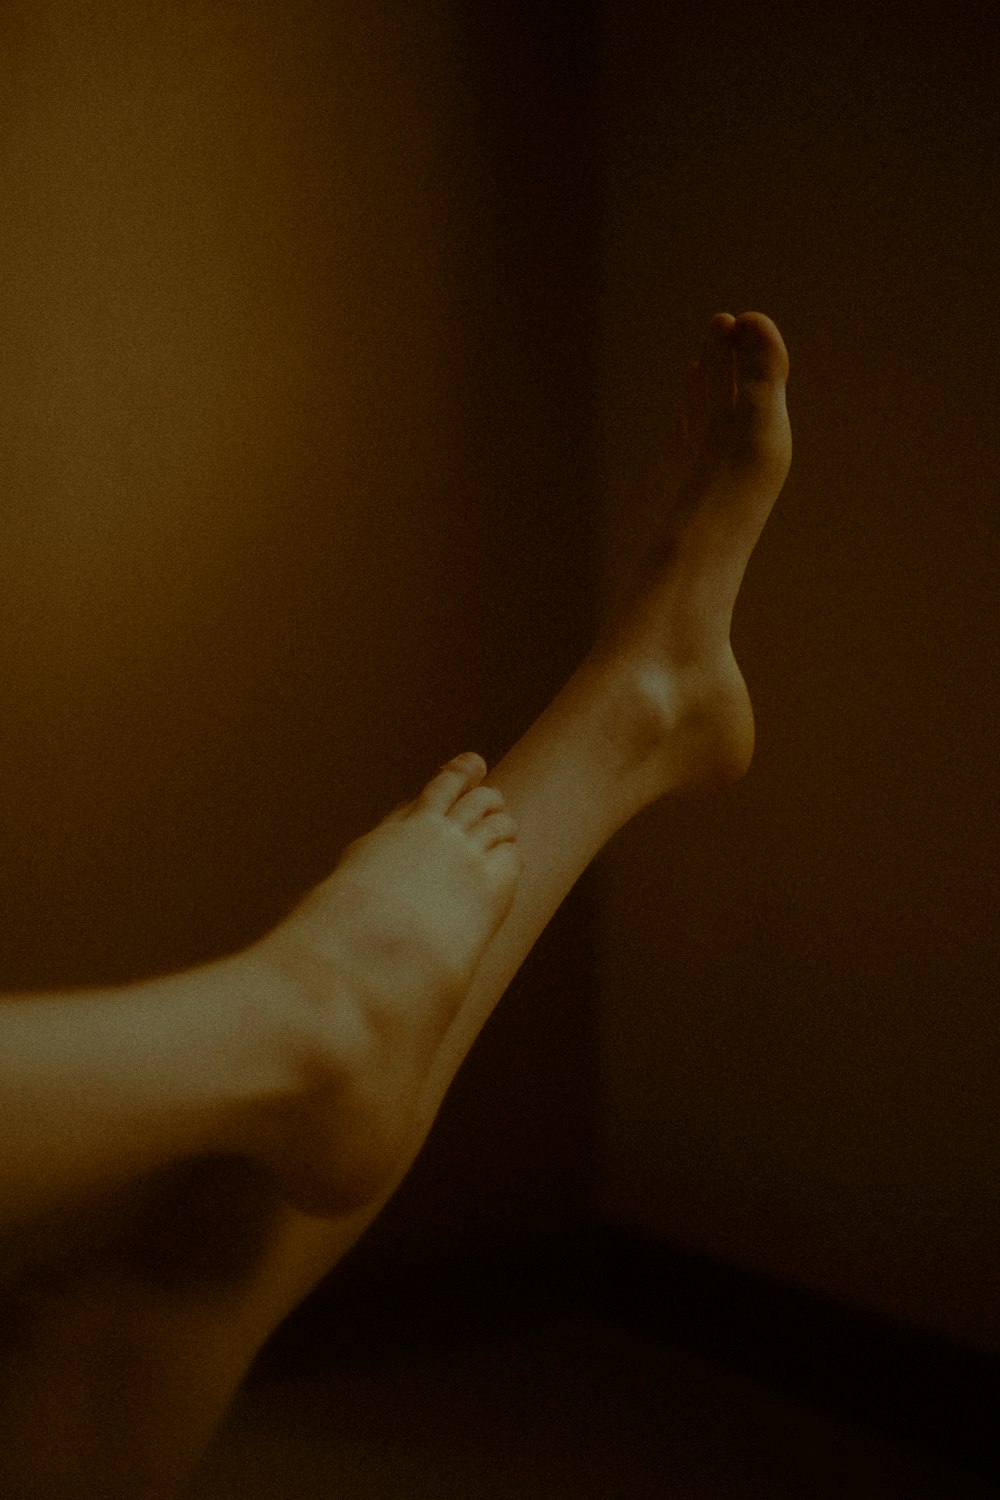 a person's bare feet in a dark room